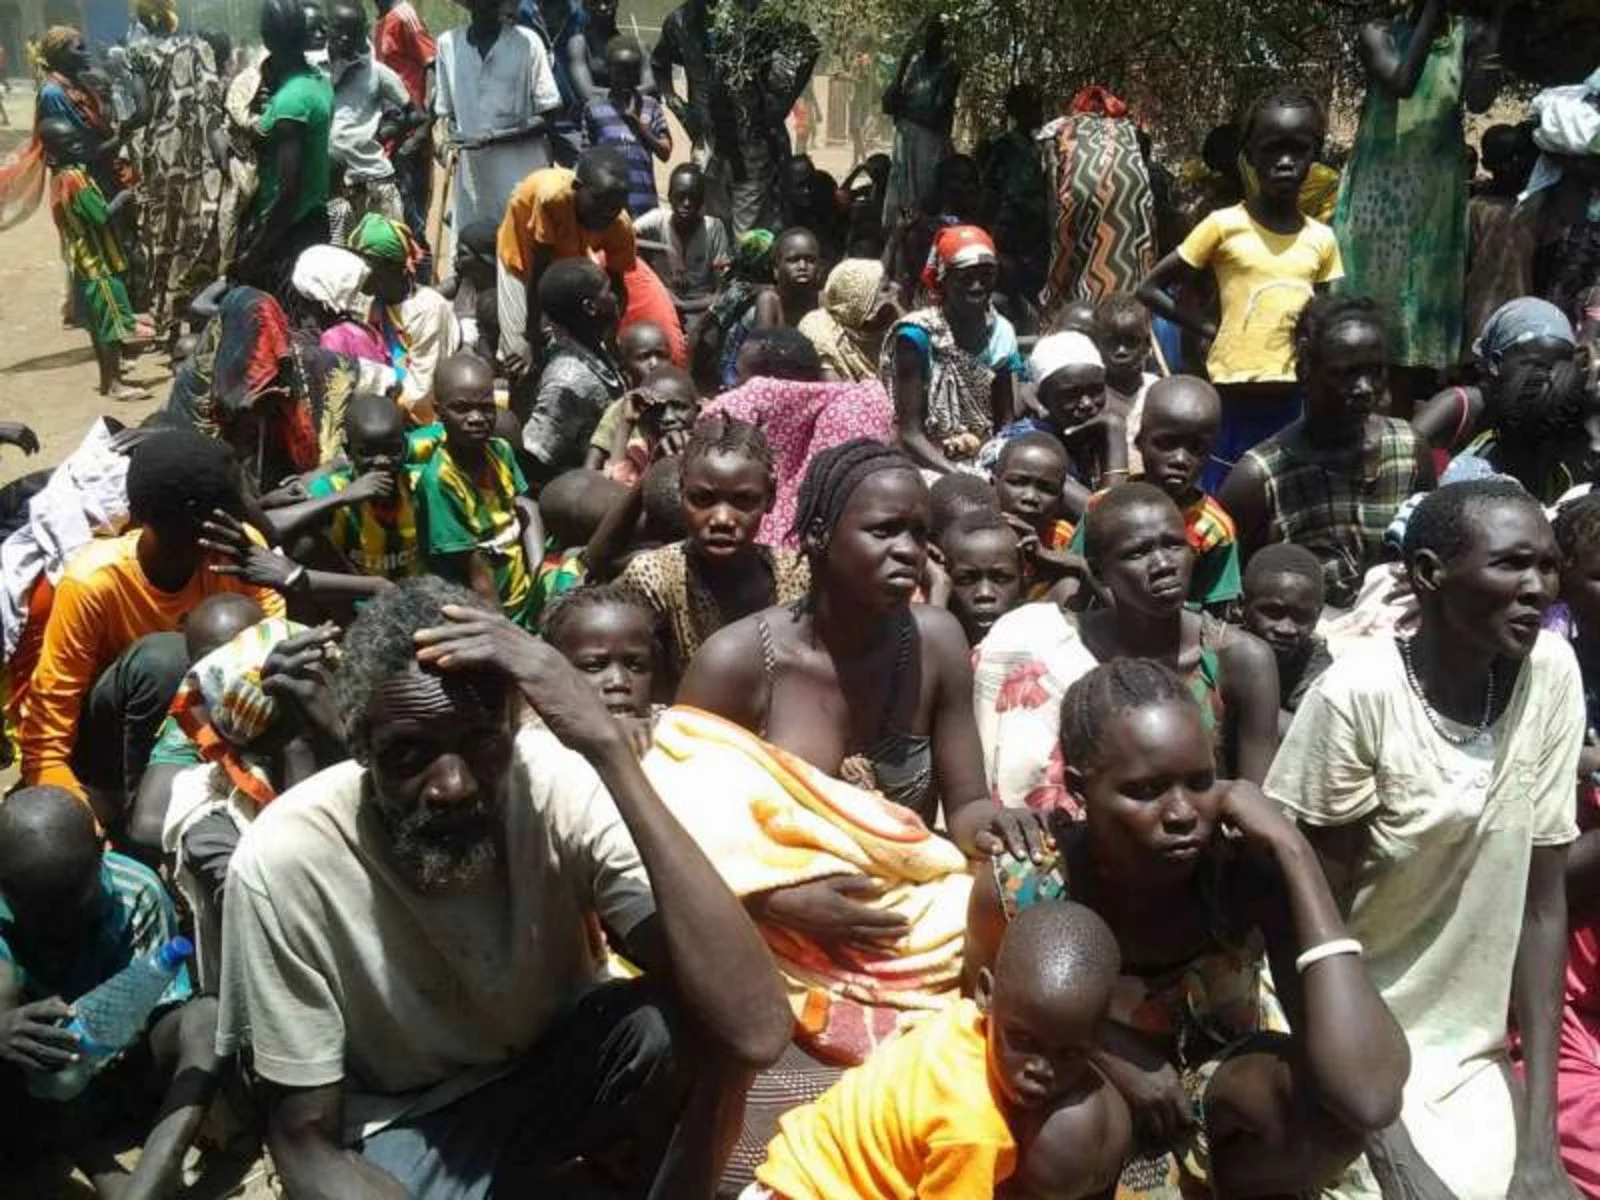 MSF faz alerta para a mortalidade e desnutrição em campo de deslocados no Sudão